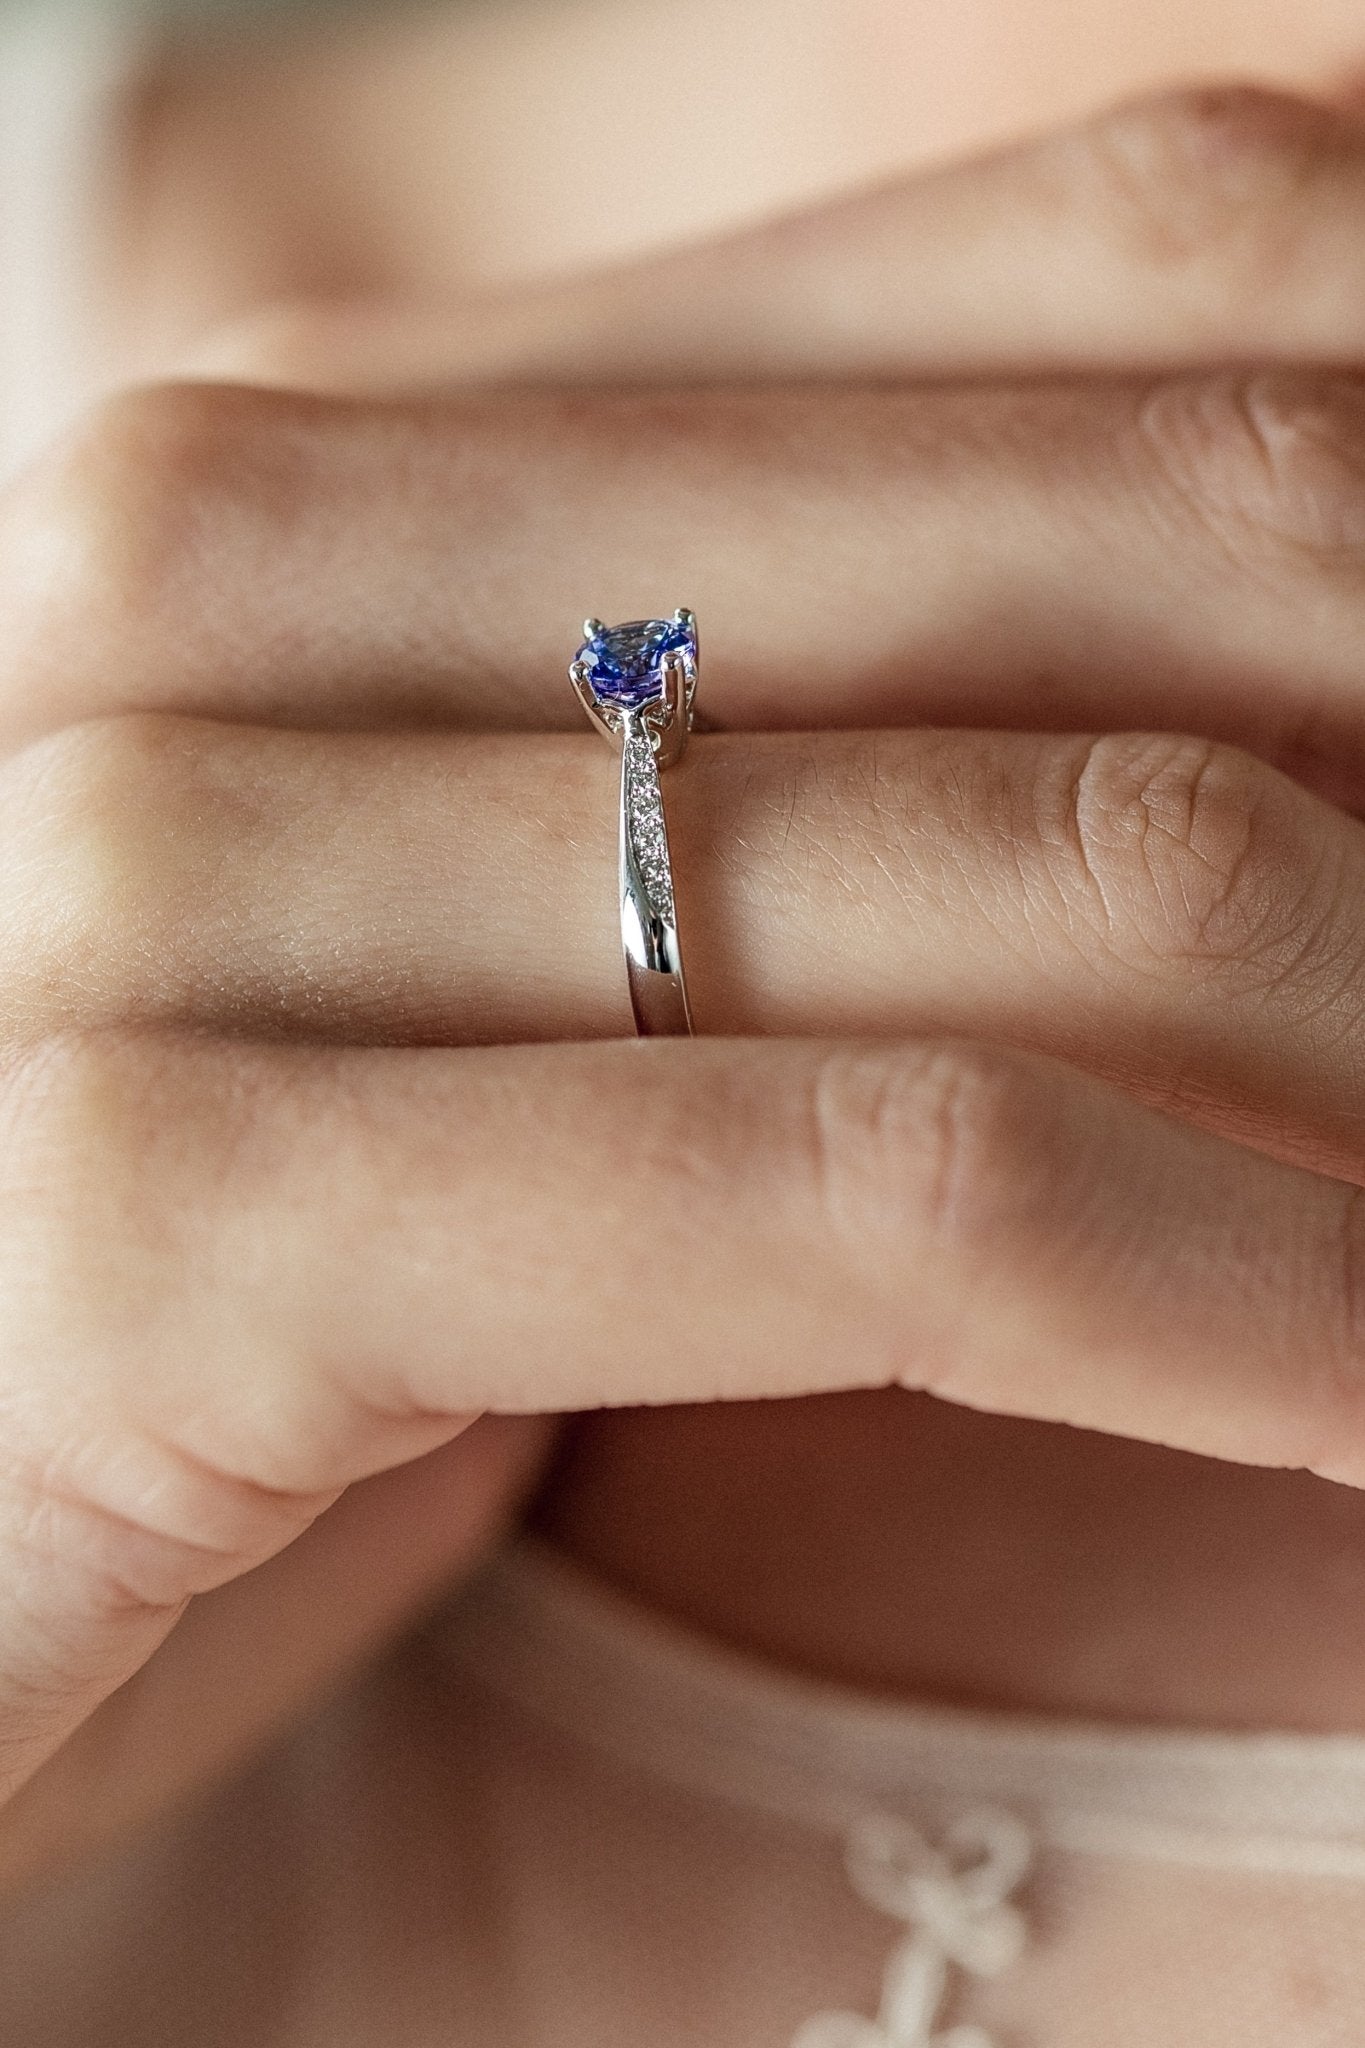 Engagement ring with tanzanite and diamonds - escorialjewelry